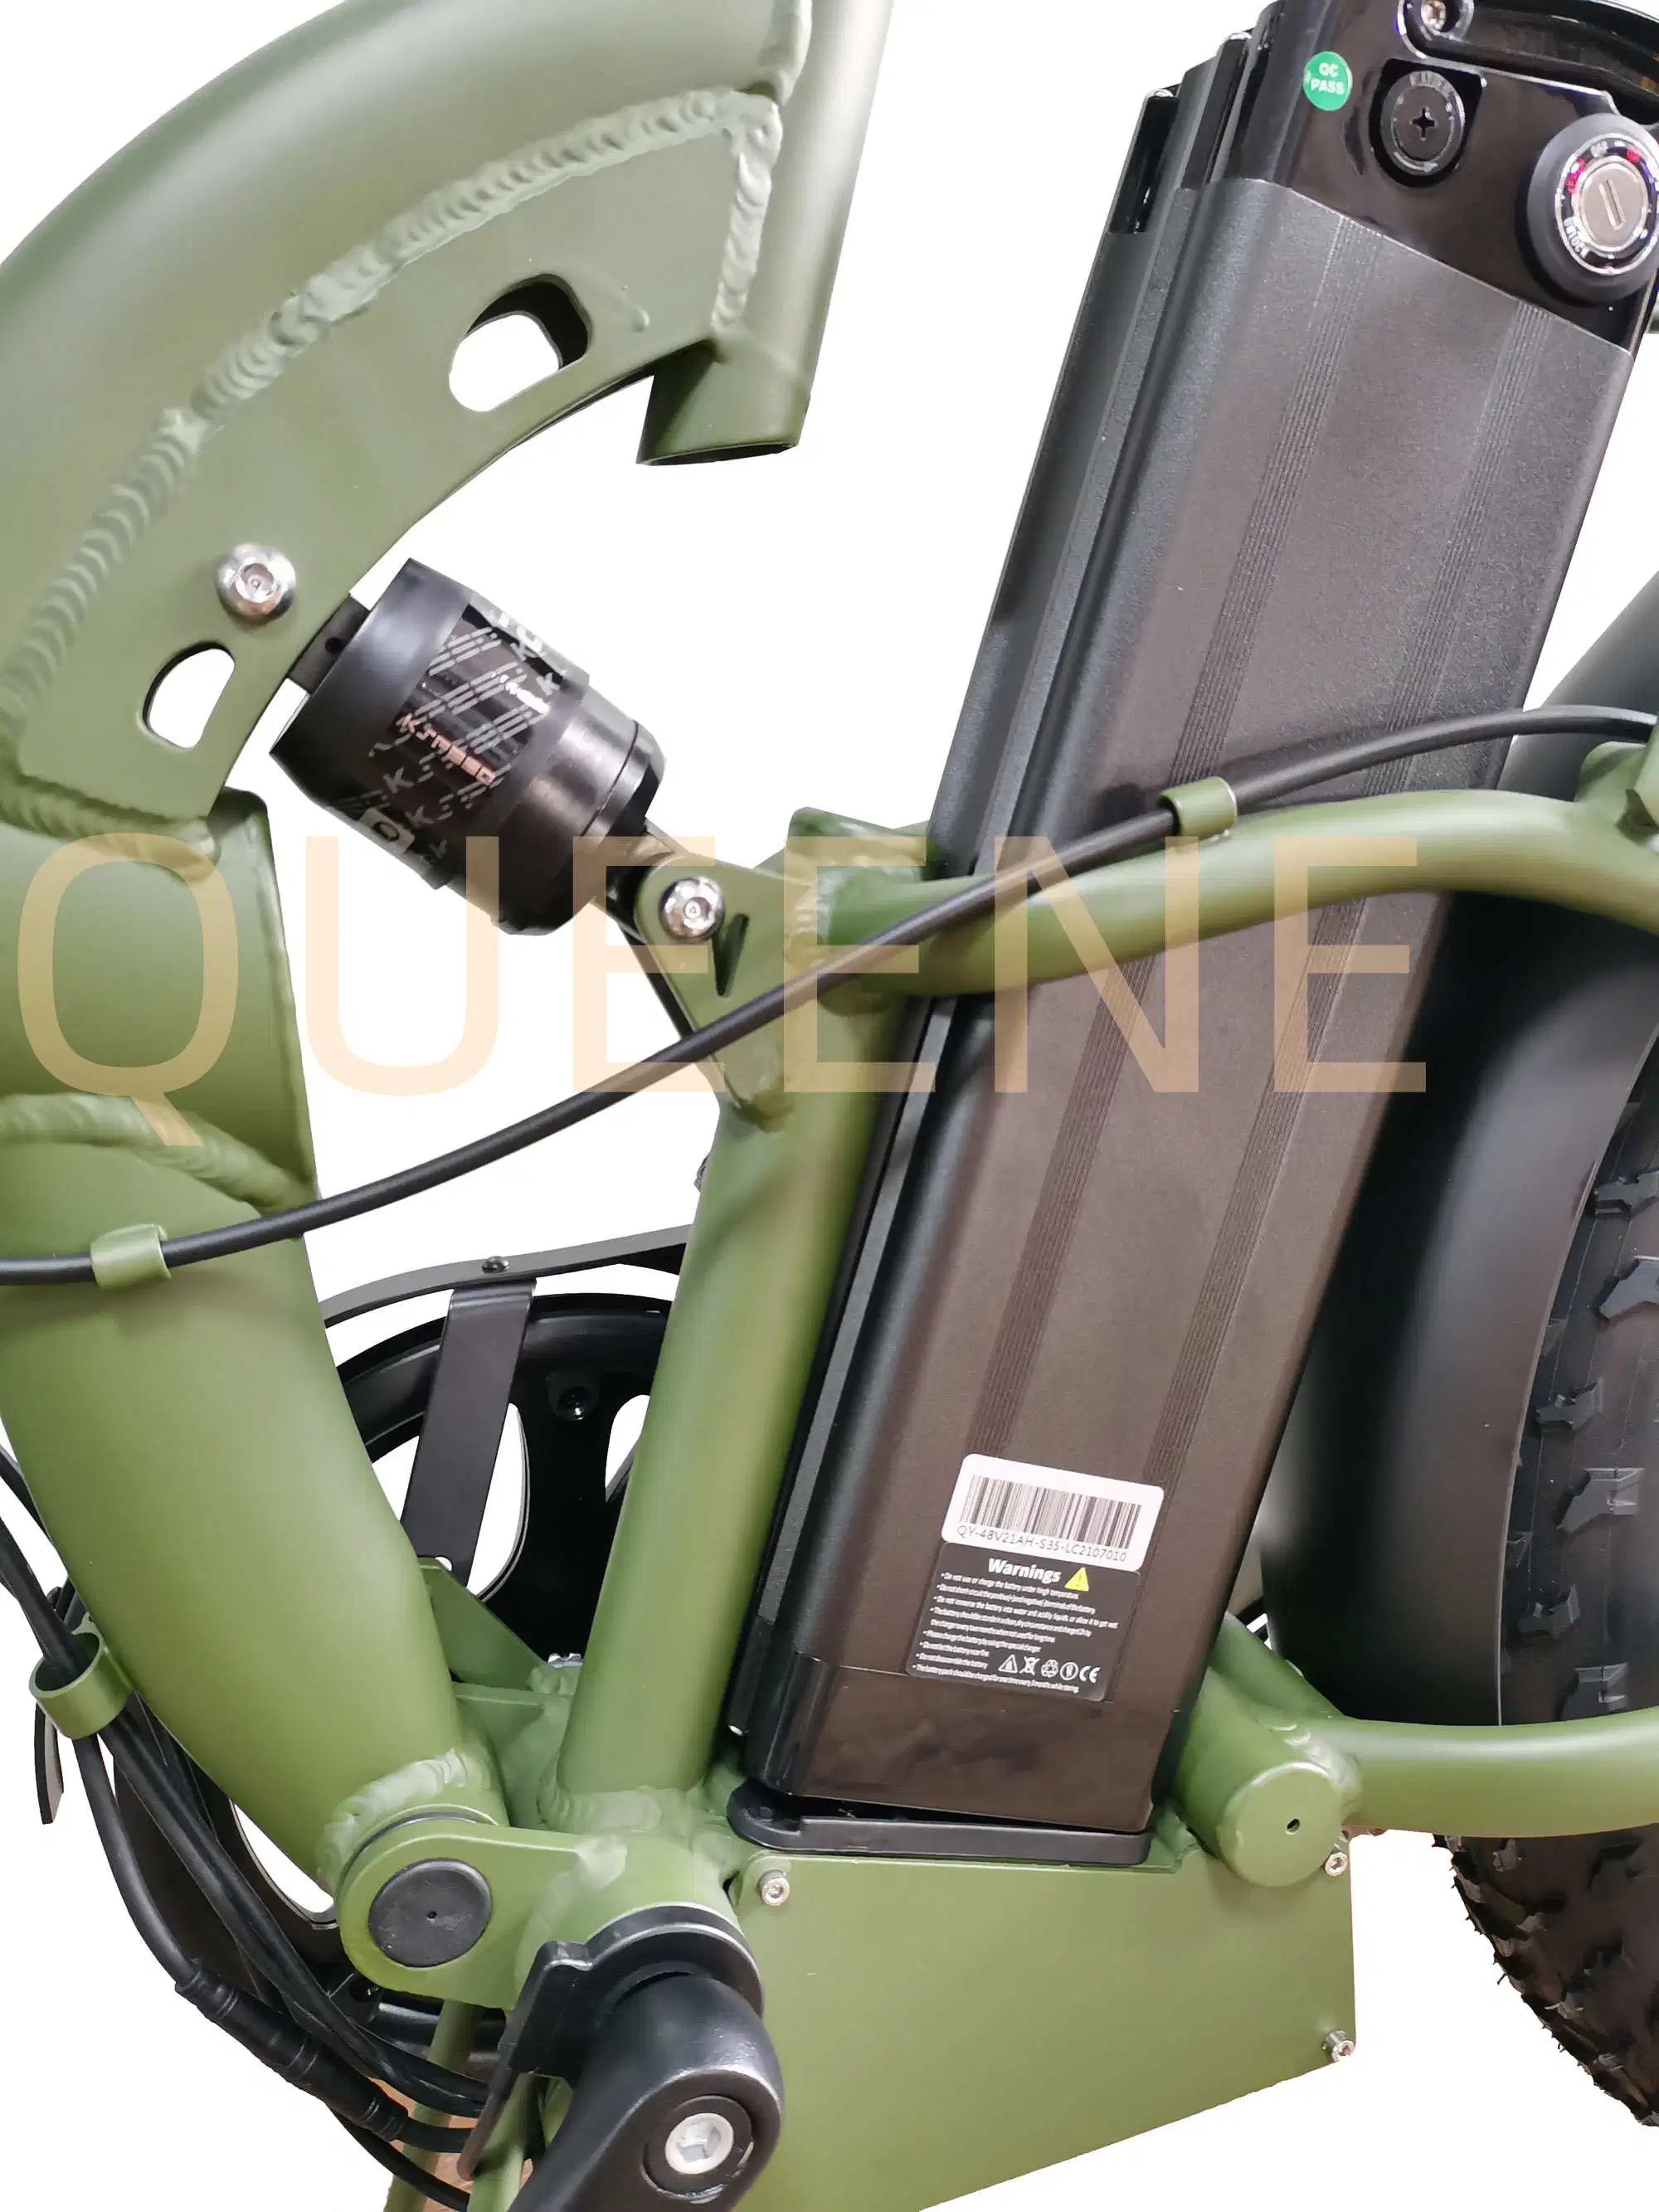 Queene/china pas cher Vintage 750W 1000W E Bike moteur Ebike la saleté de graisses de montagne vélo pneus vélo électrique